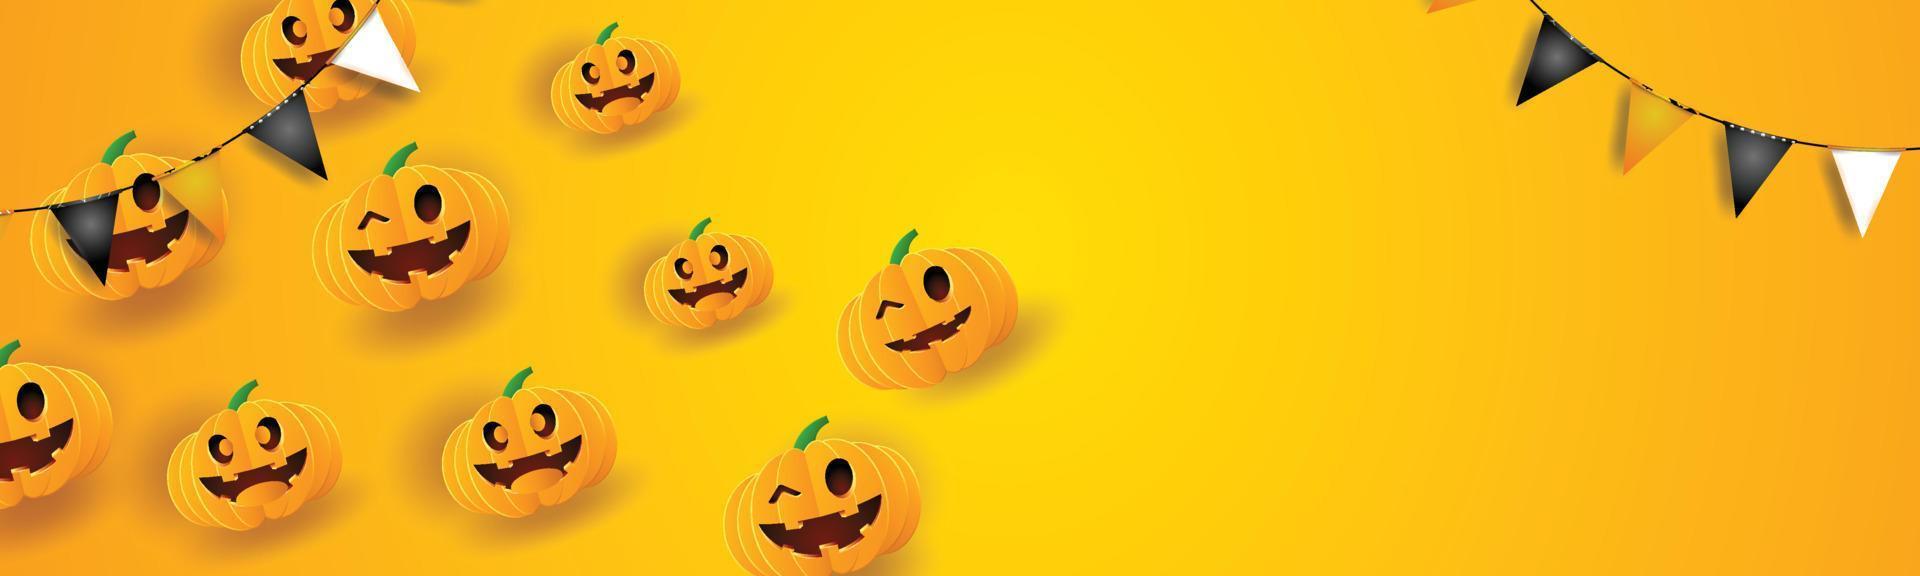 hallo halloween achtergrond oranje gele pagina benner ruimte pompoenen op oktober herfst seizoen poster kaart vector